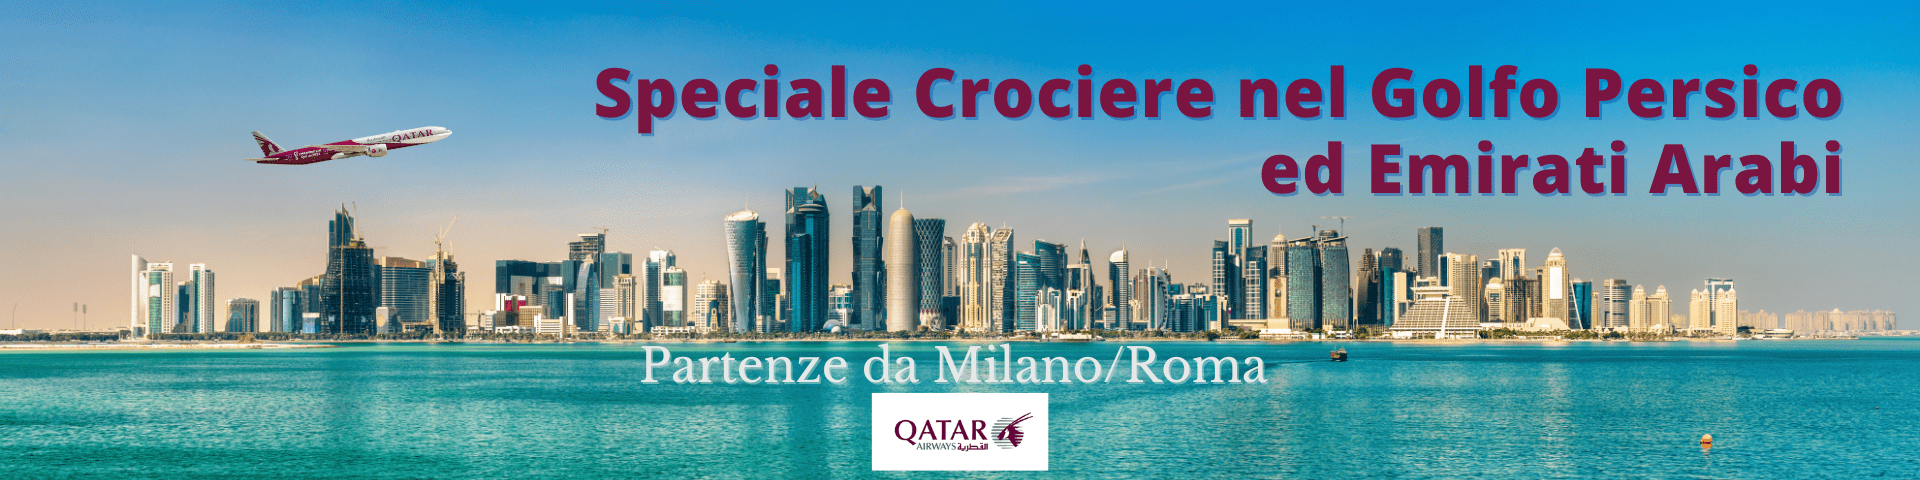 Crociere Golfo Persico con Qatar Airways